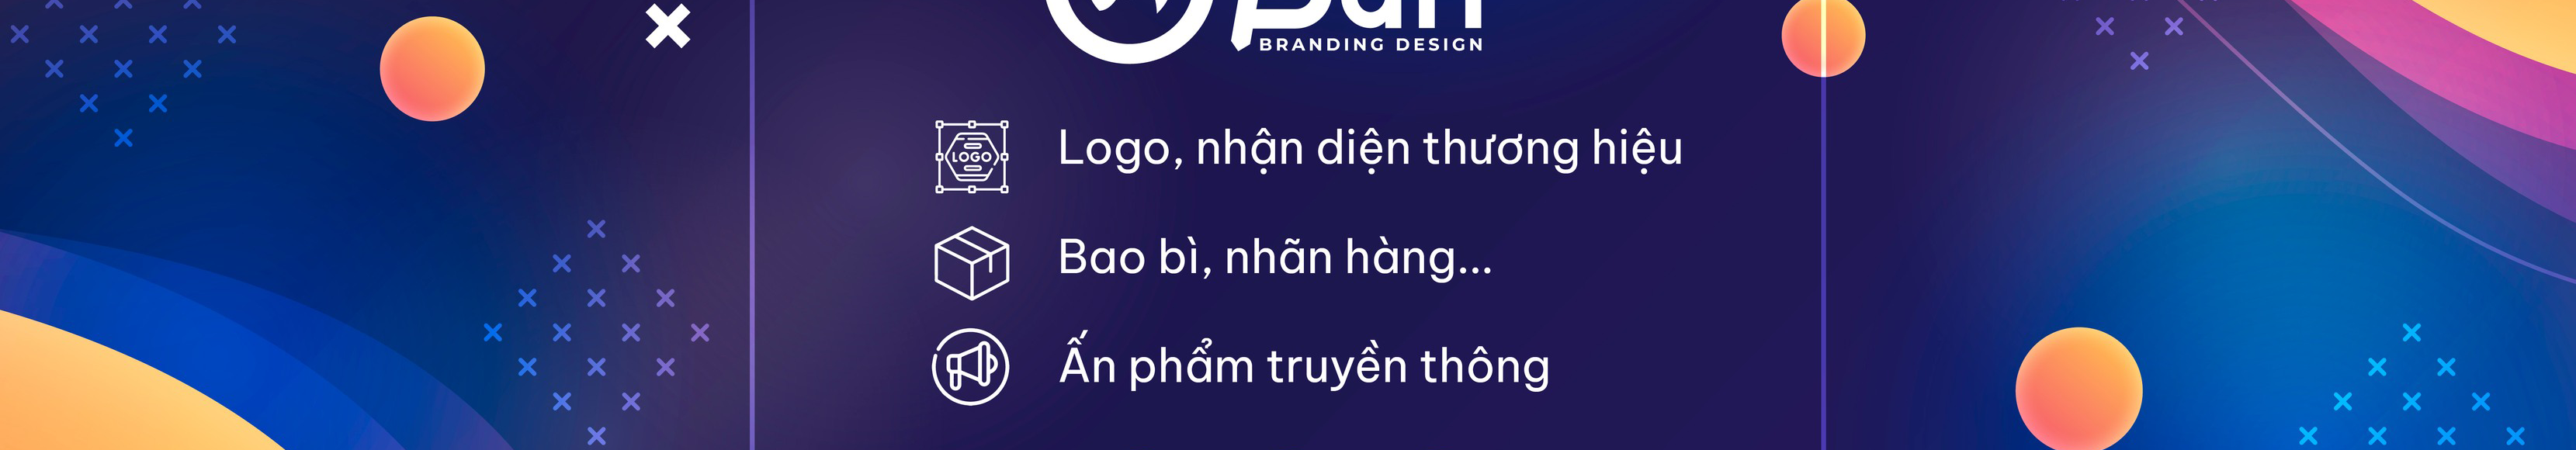 Баннер профиля Nguyen Ba Thinh